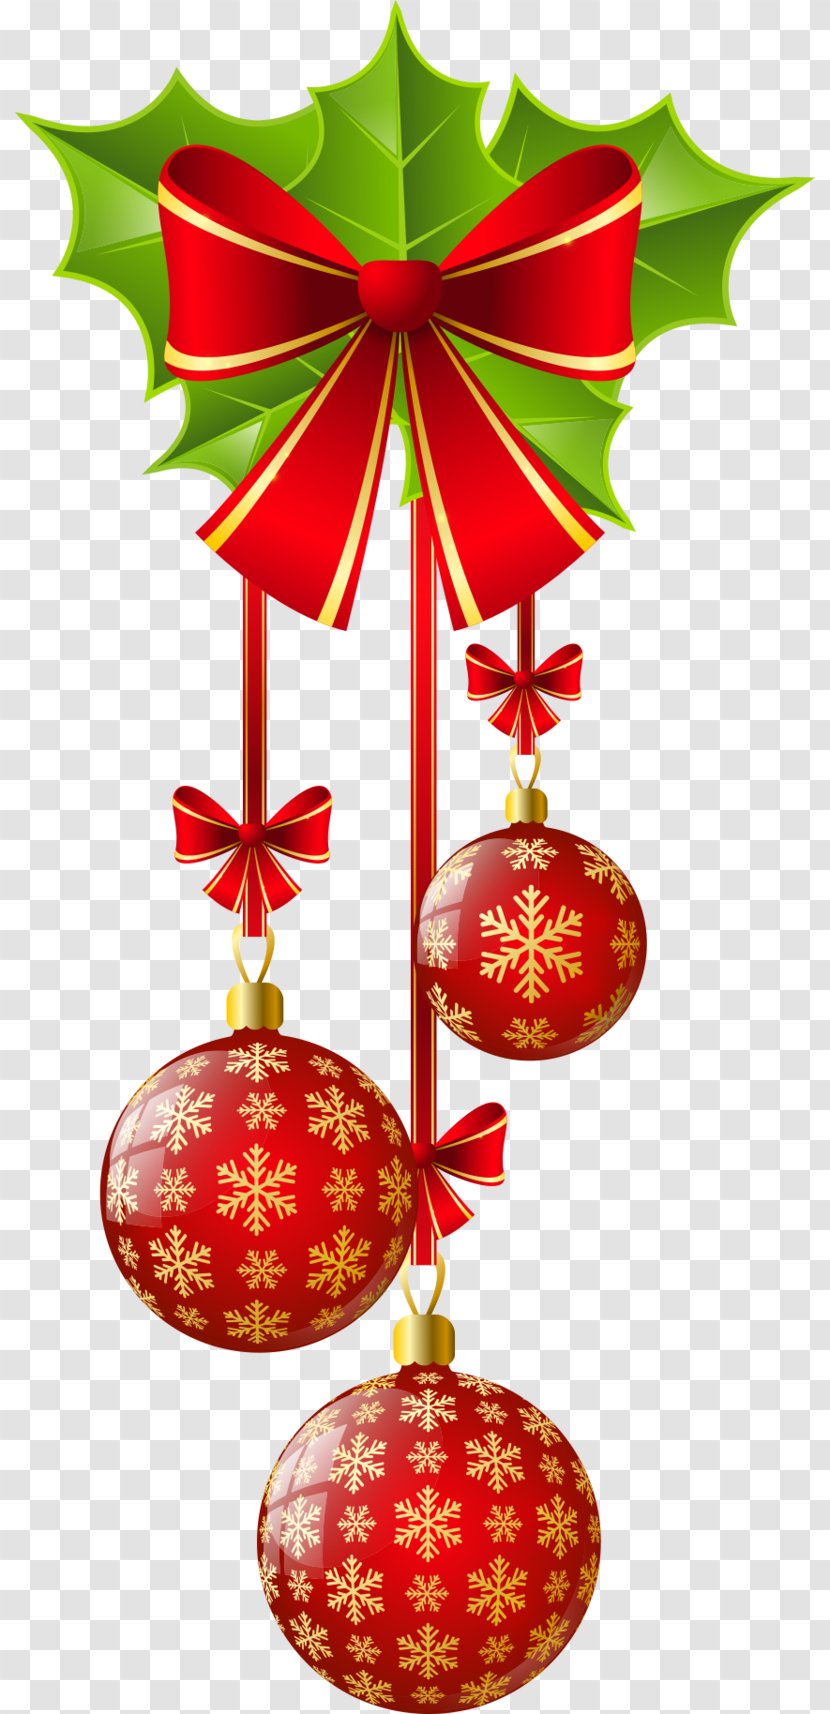 Santa Claus Clip Art Christmas Ornament Day Decoration Transparent PNG